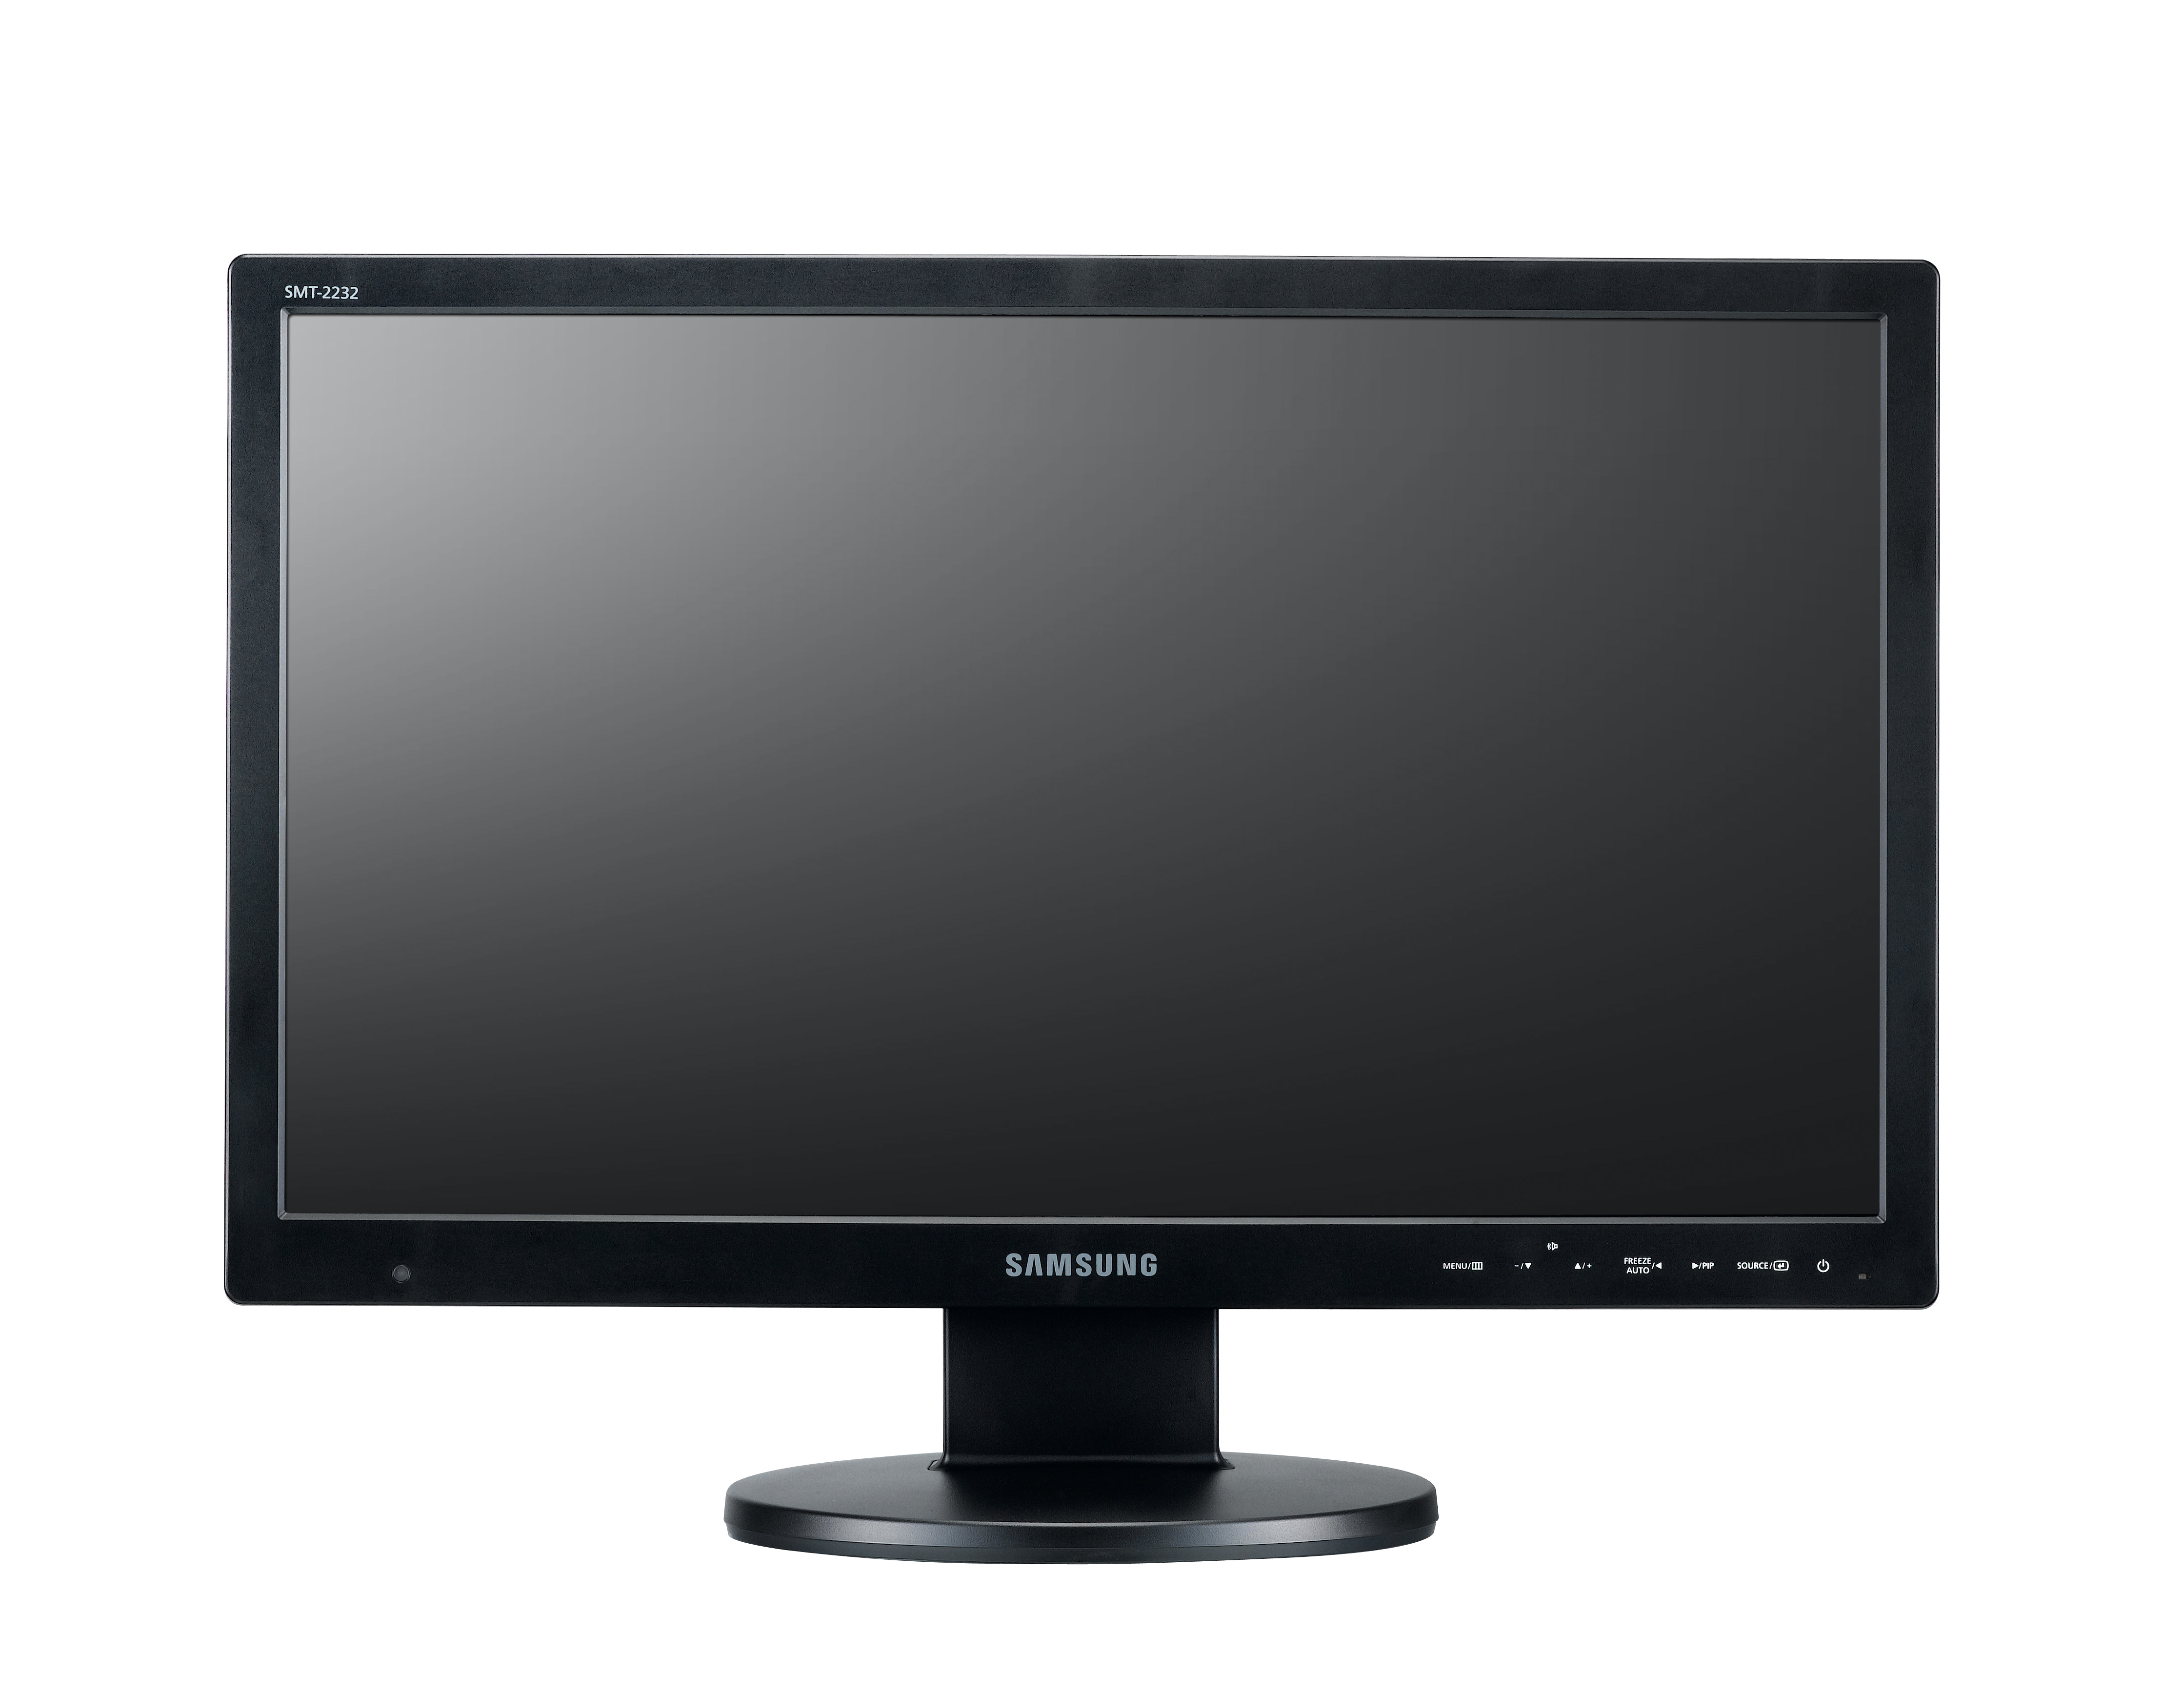 SAMSUNG SMT-2232 22型 WIDE LED モニター Full HD レベル (1,920 x 1,080) 解像度 HDMI